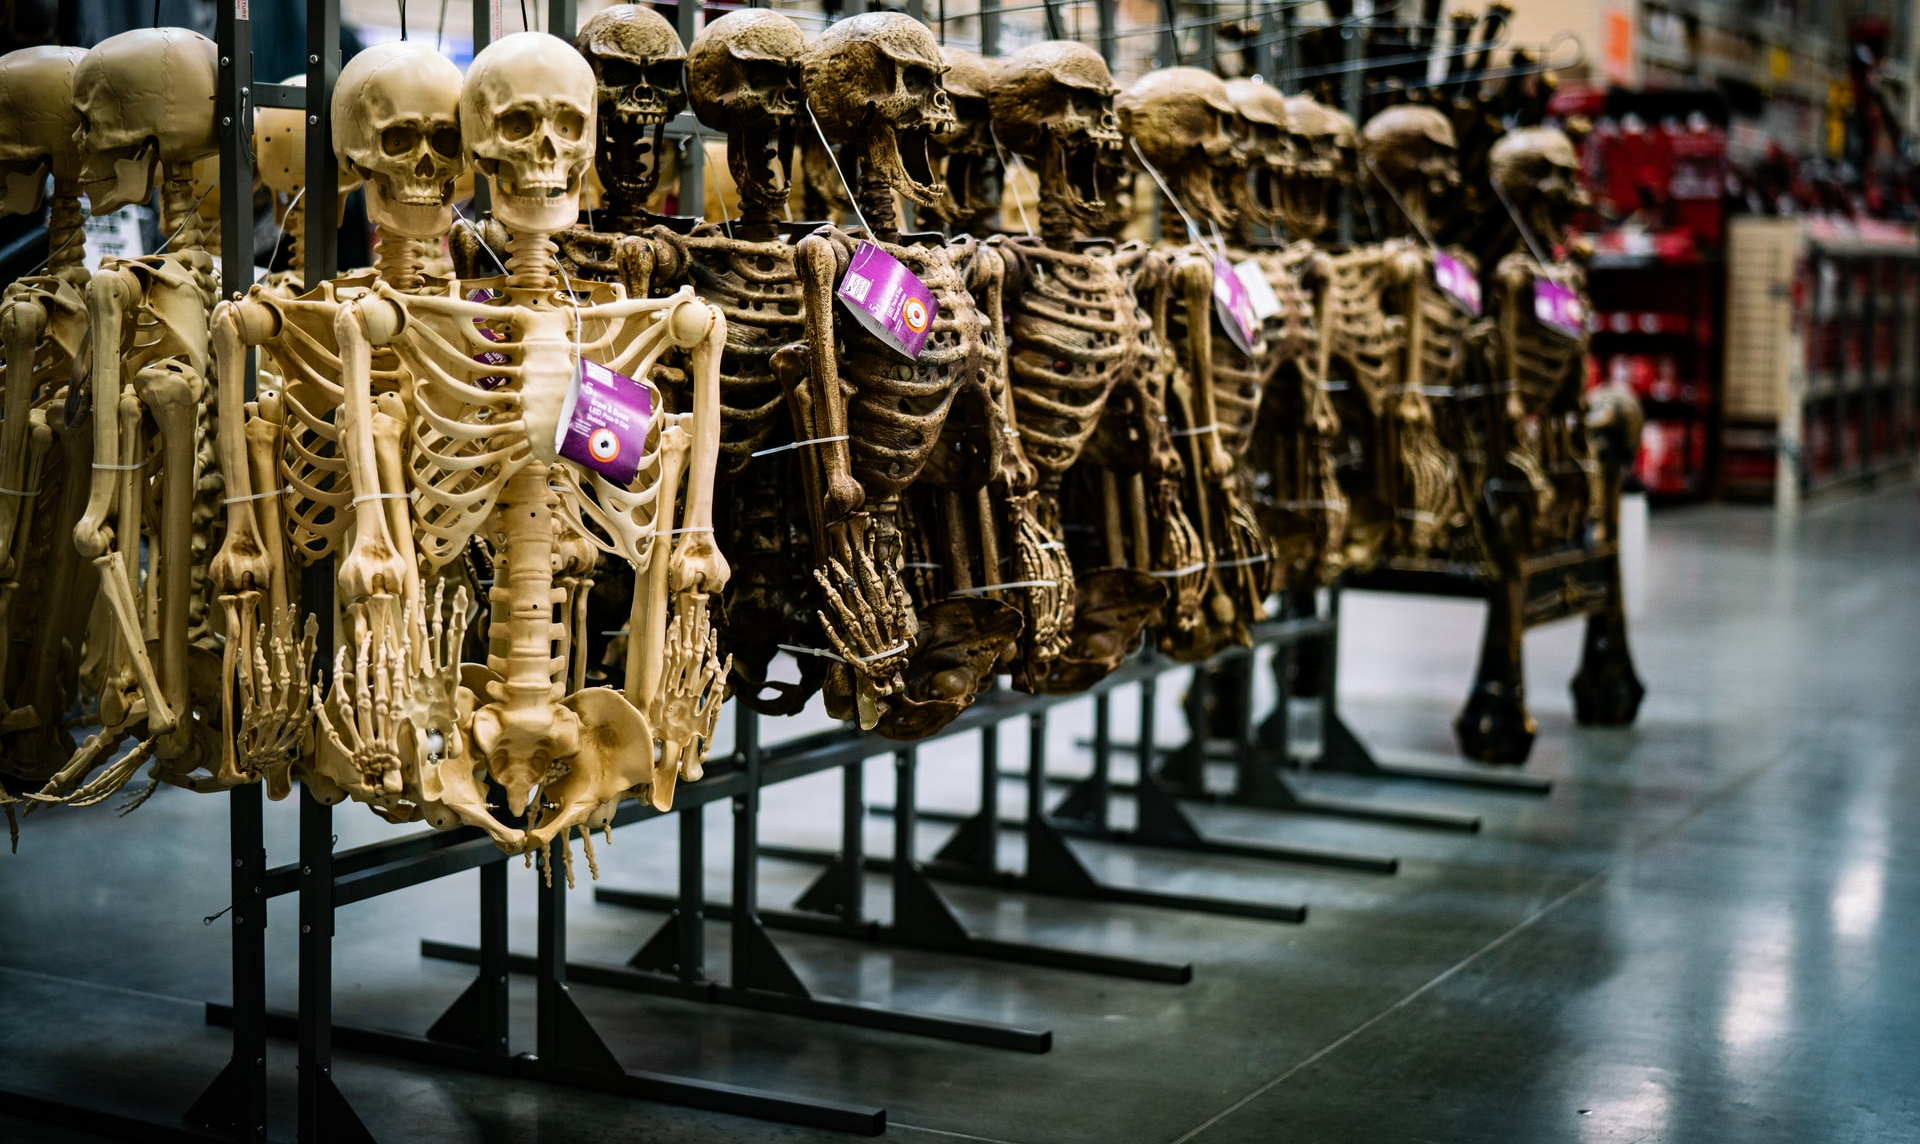 Home Depot is bringing back Skelly, a fan favorite 12 foot skeleton display.